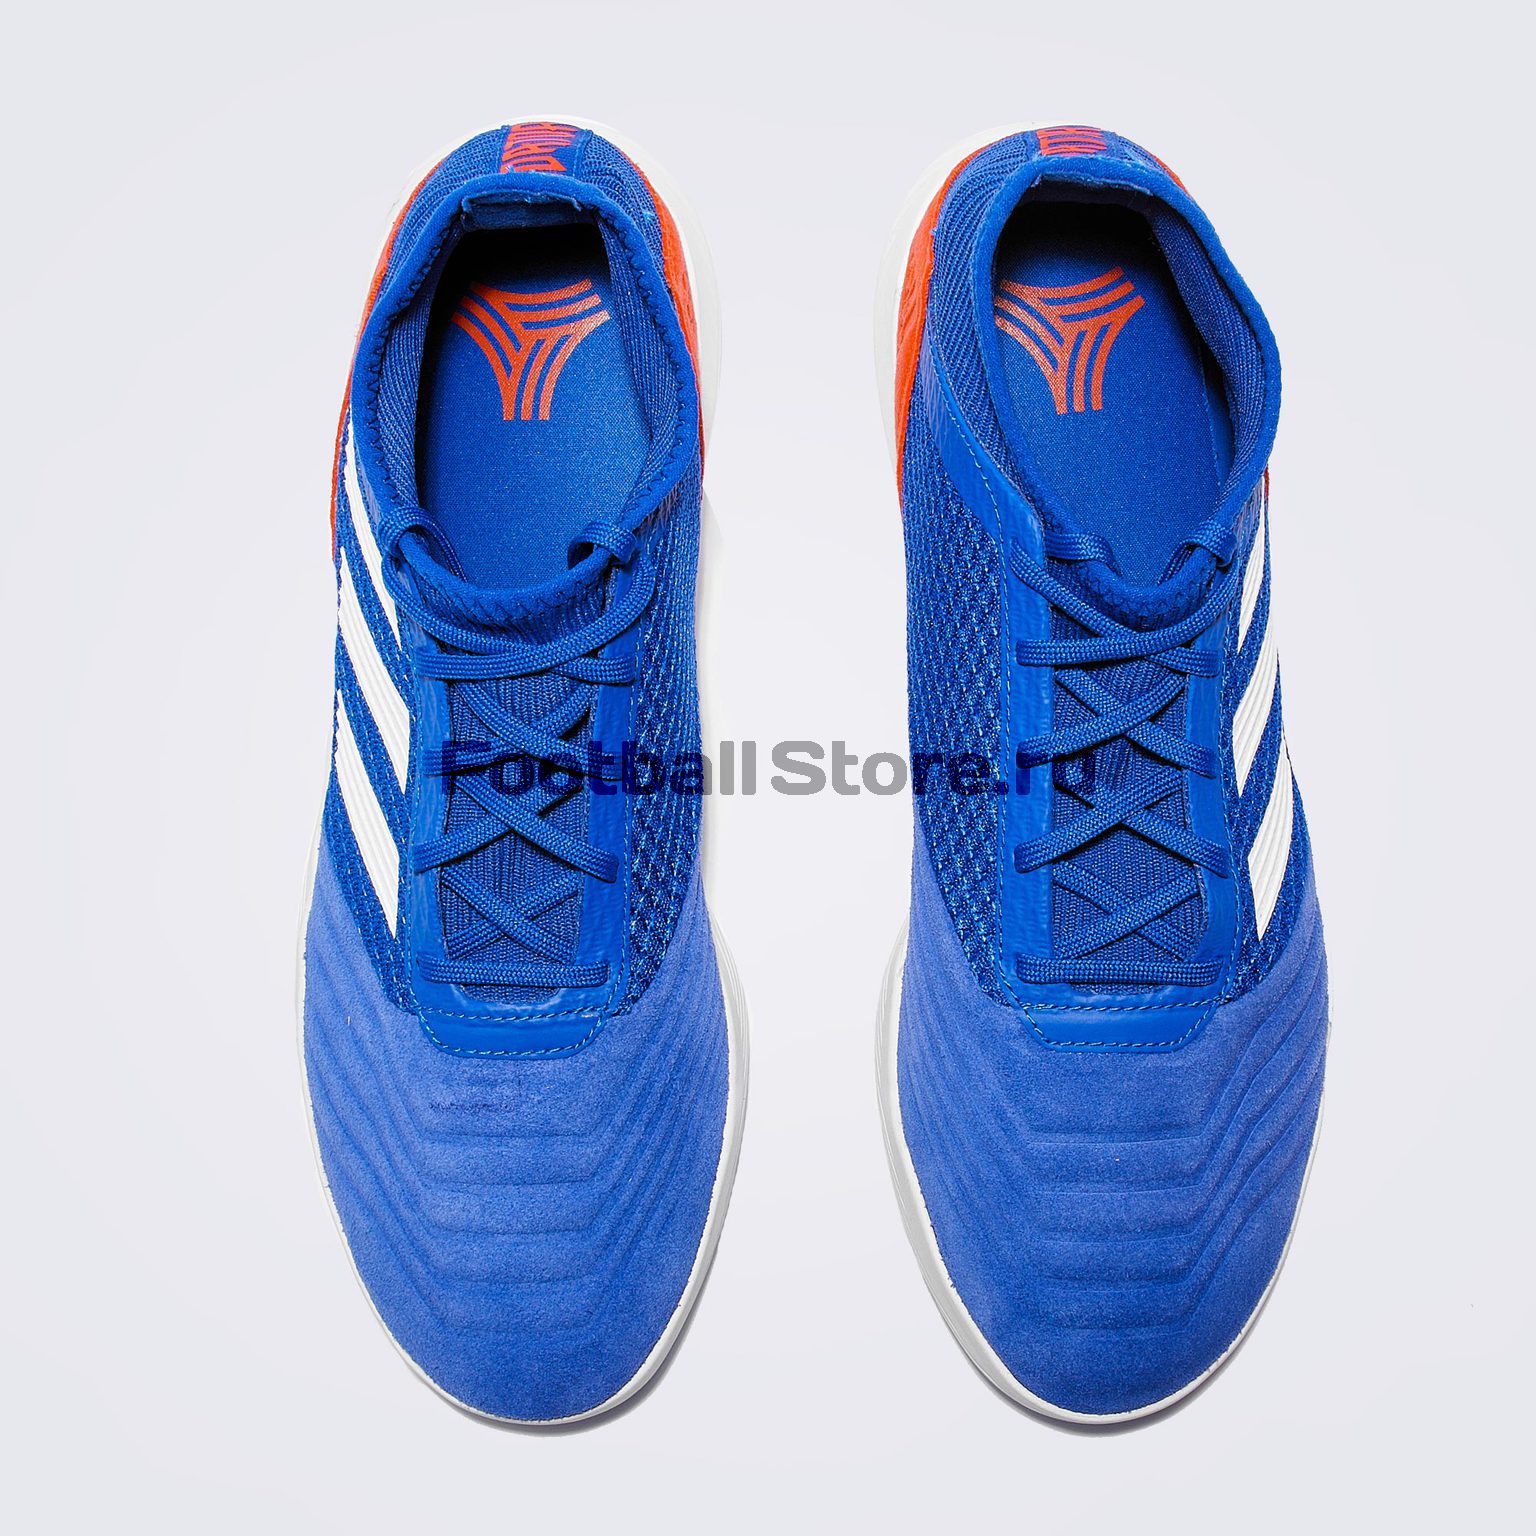 Футбольная обувь Adidas Predator 19.3 TR BB9086